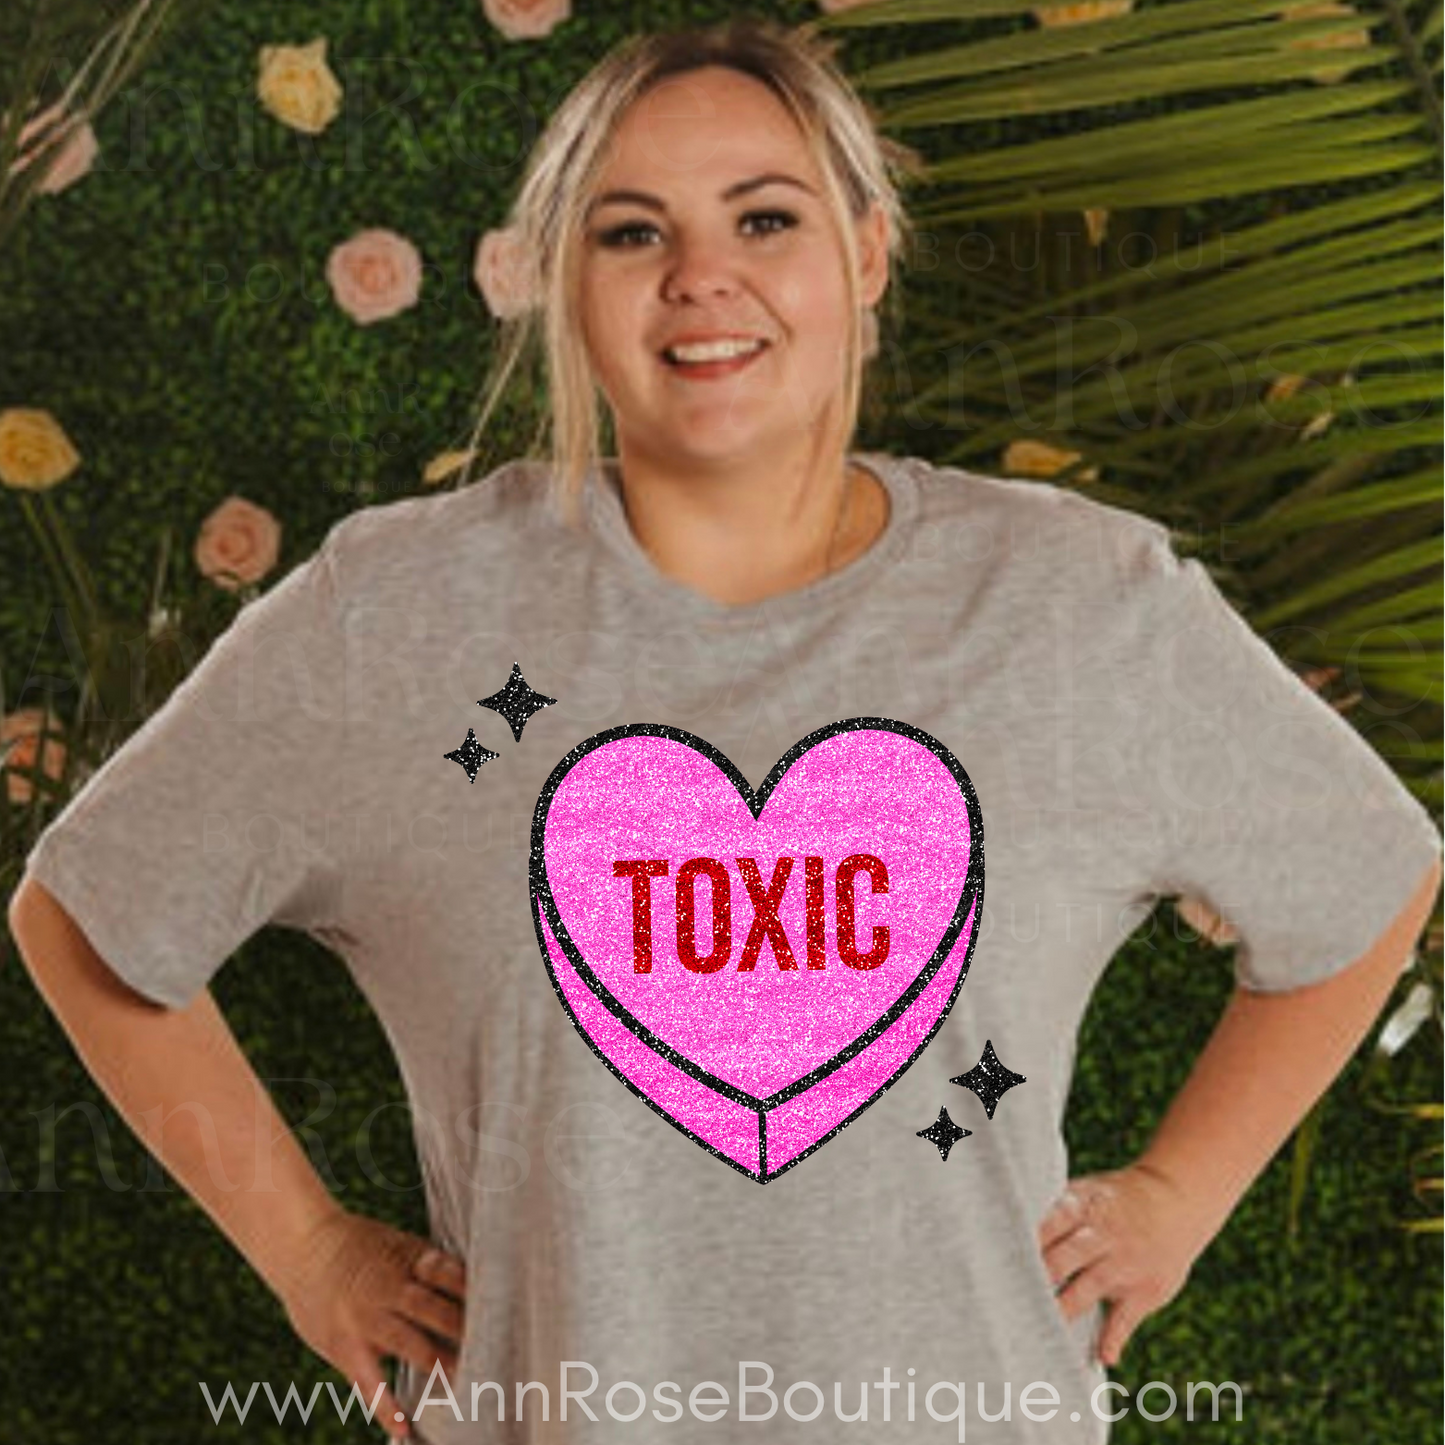 Toxic heart